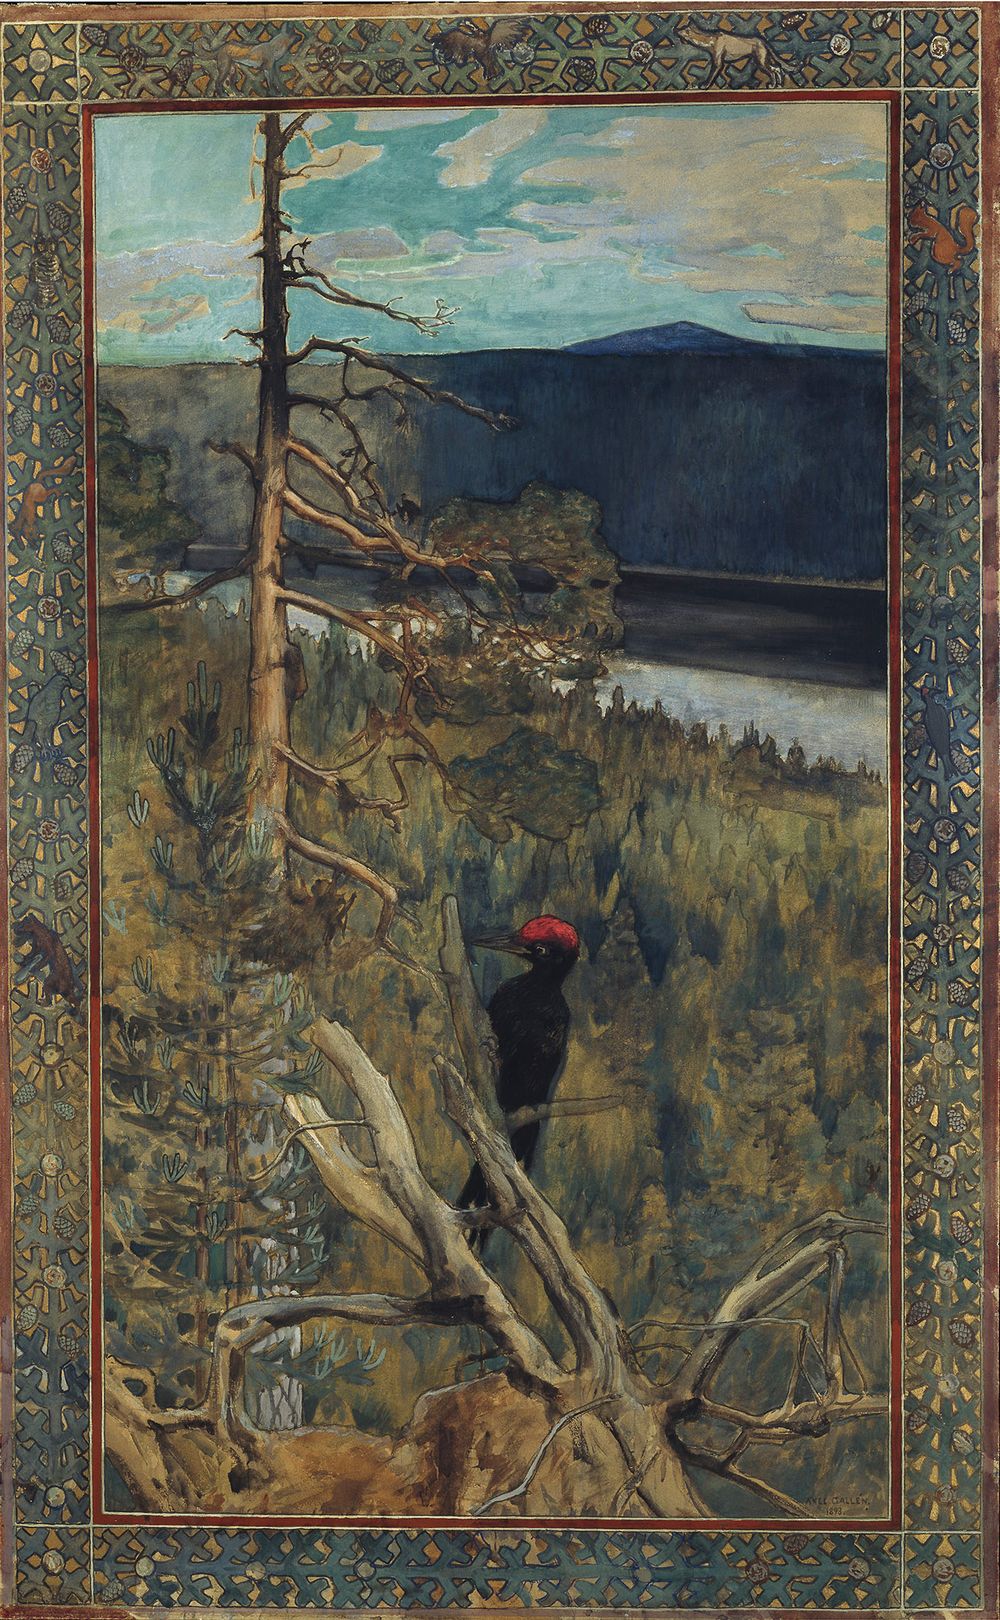 黑色大啄木鳥 by Akseli Gallen-Kallela - 1893 - 145 x 90 公分 